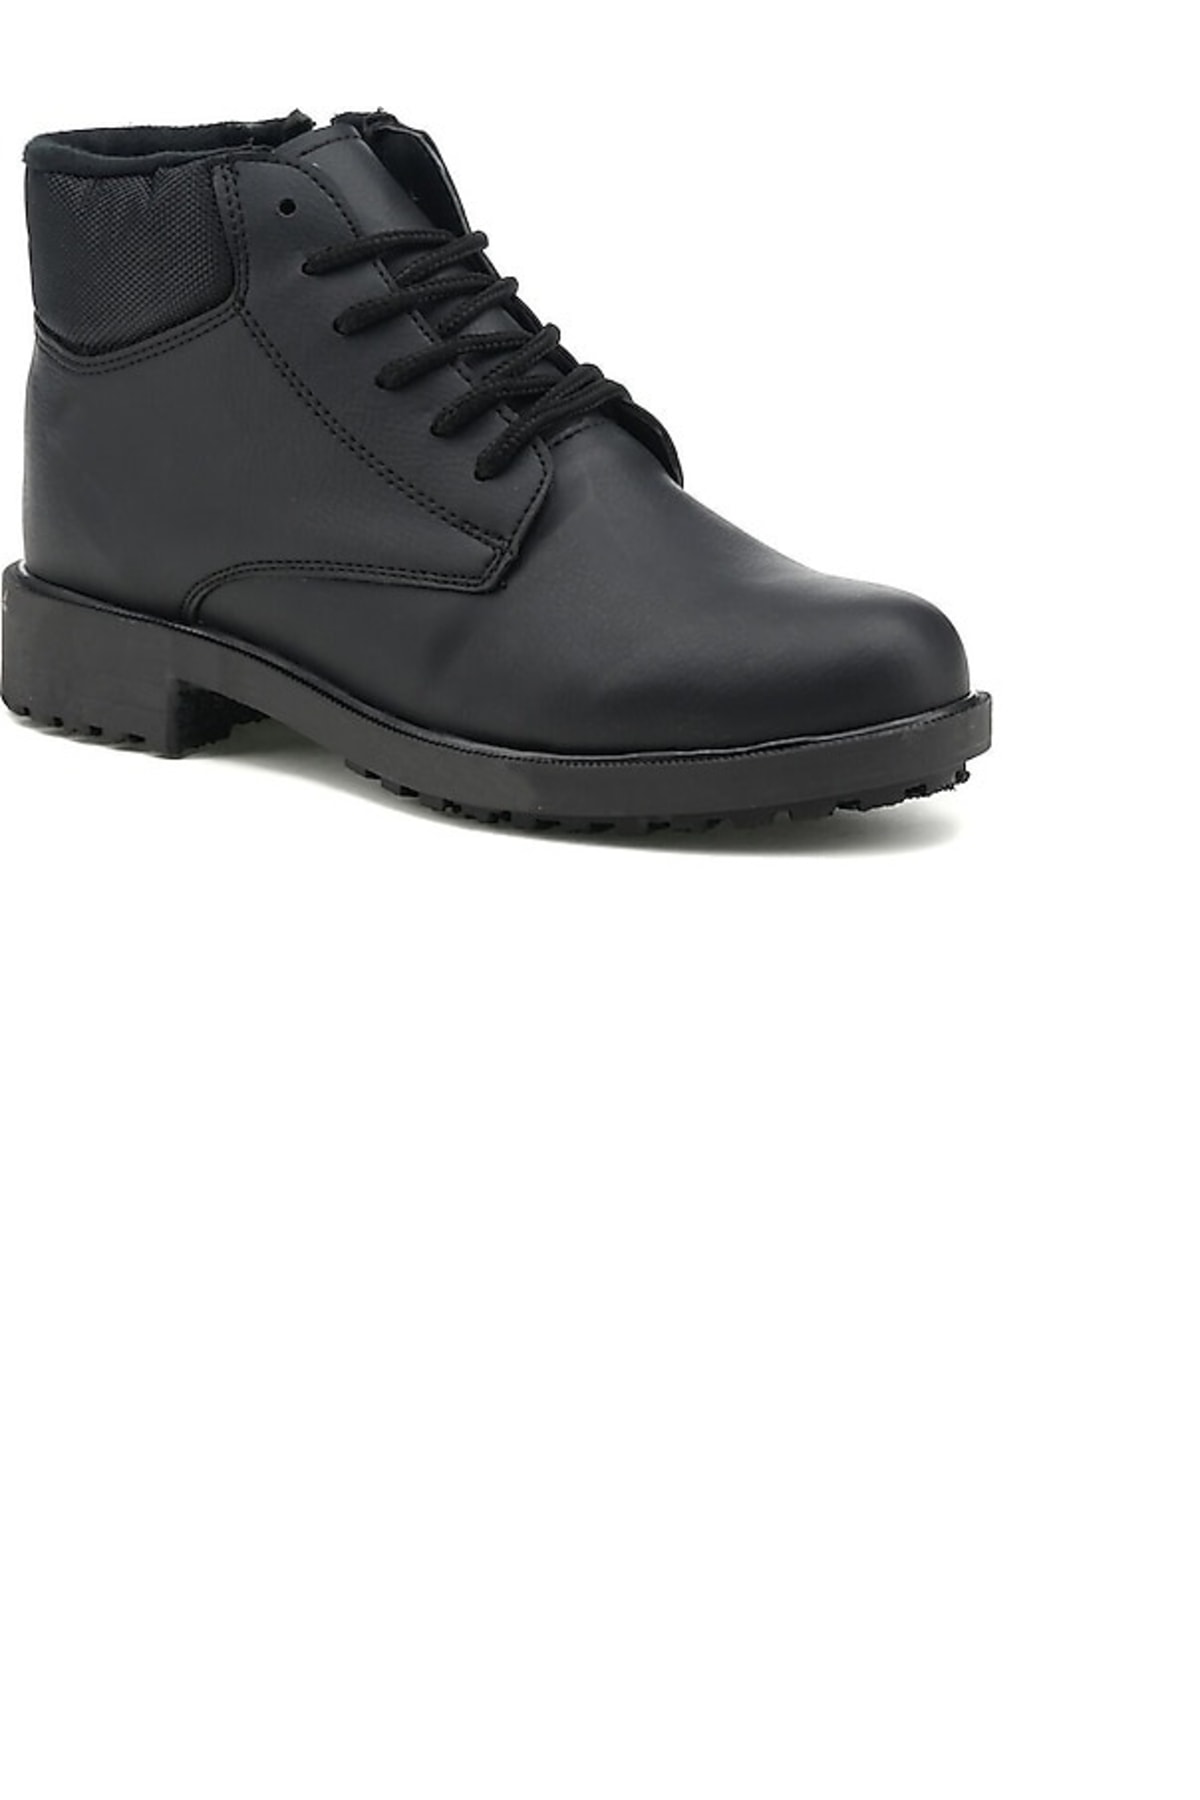 Levně Polaris 150507.m2pr Black Men's Casual Boots.